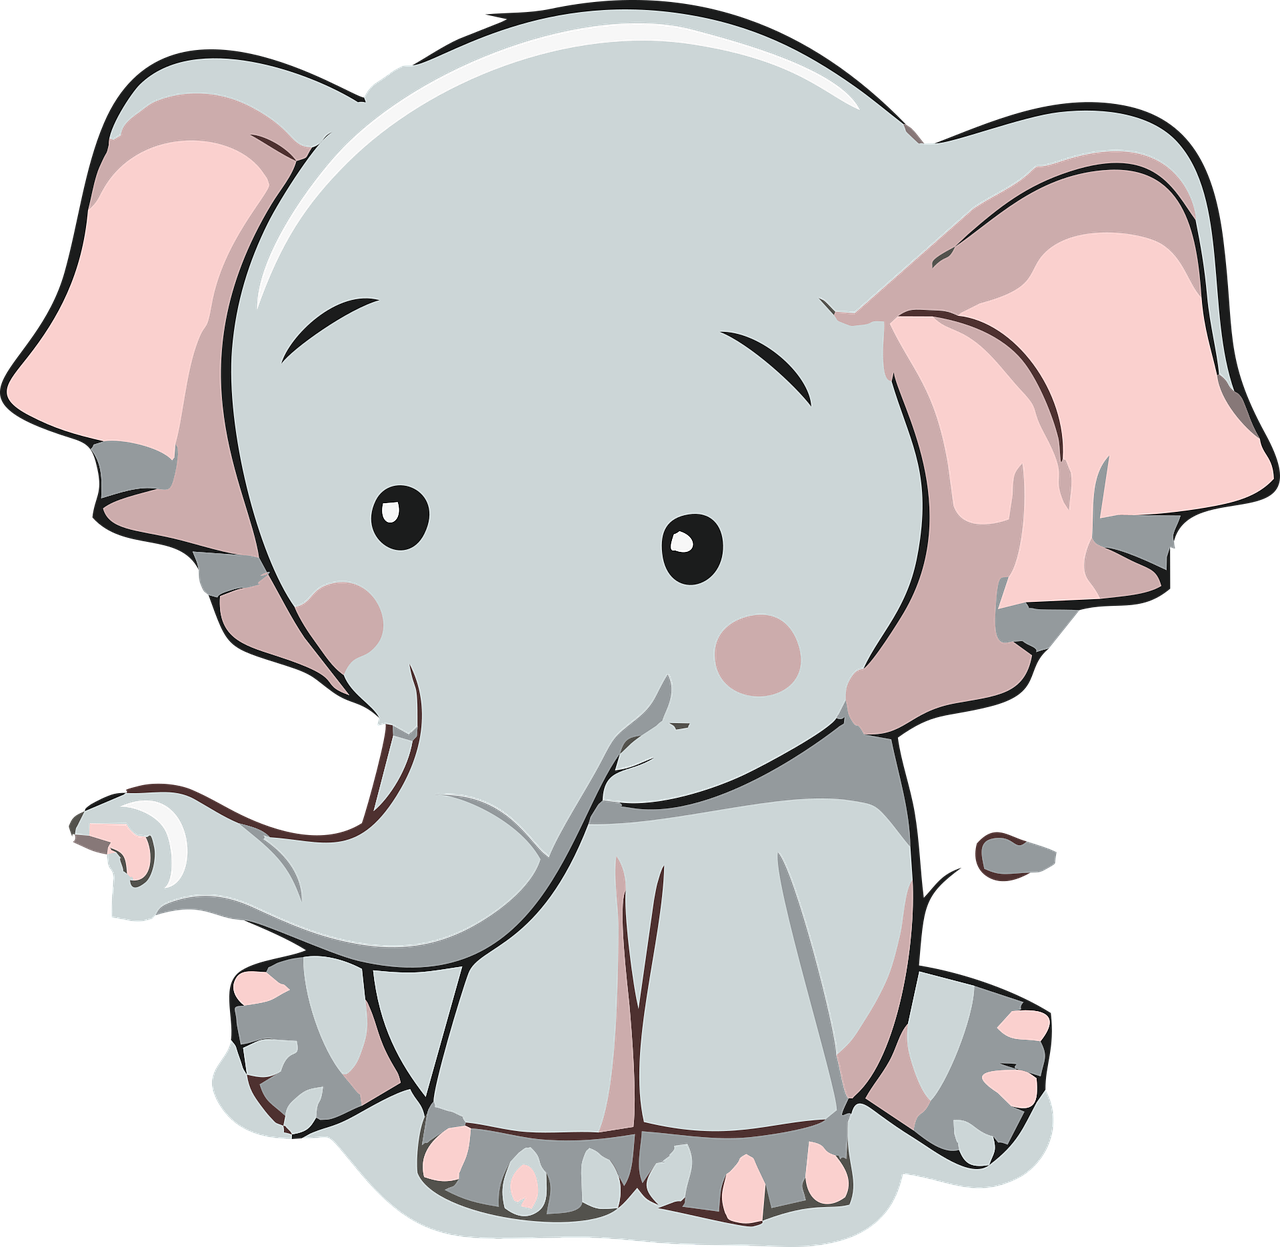 La imagen muestra un elefante